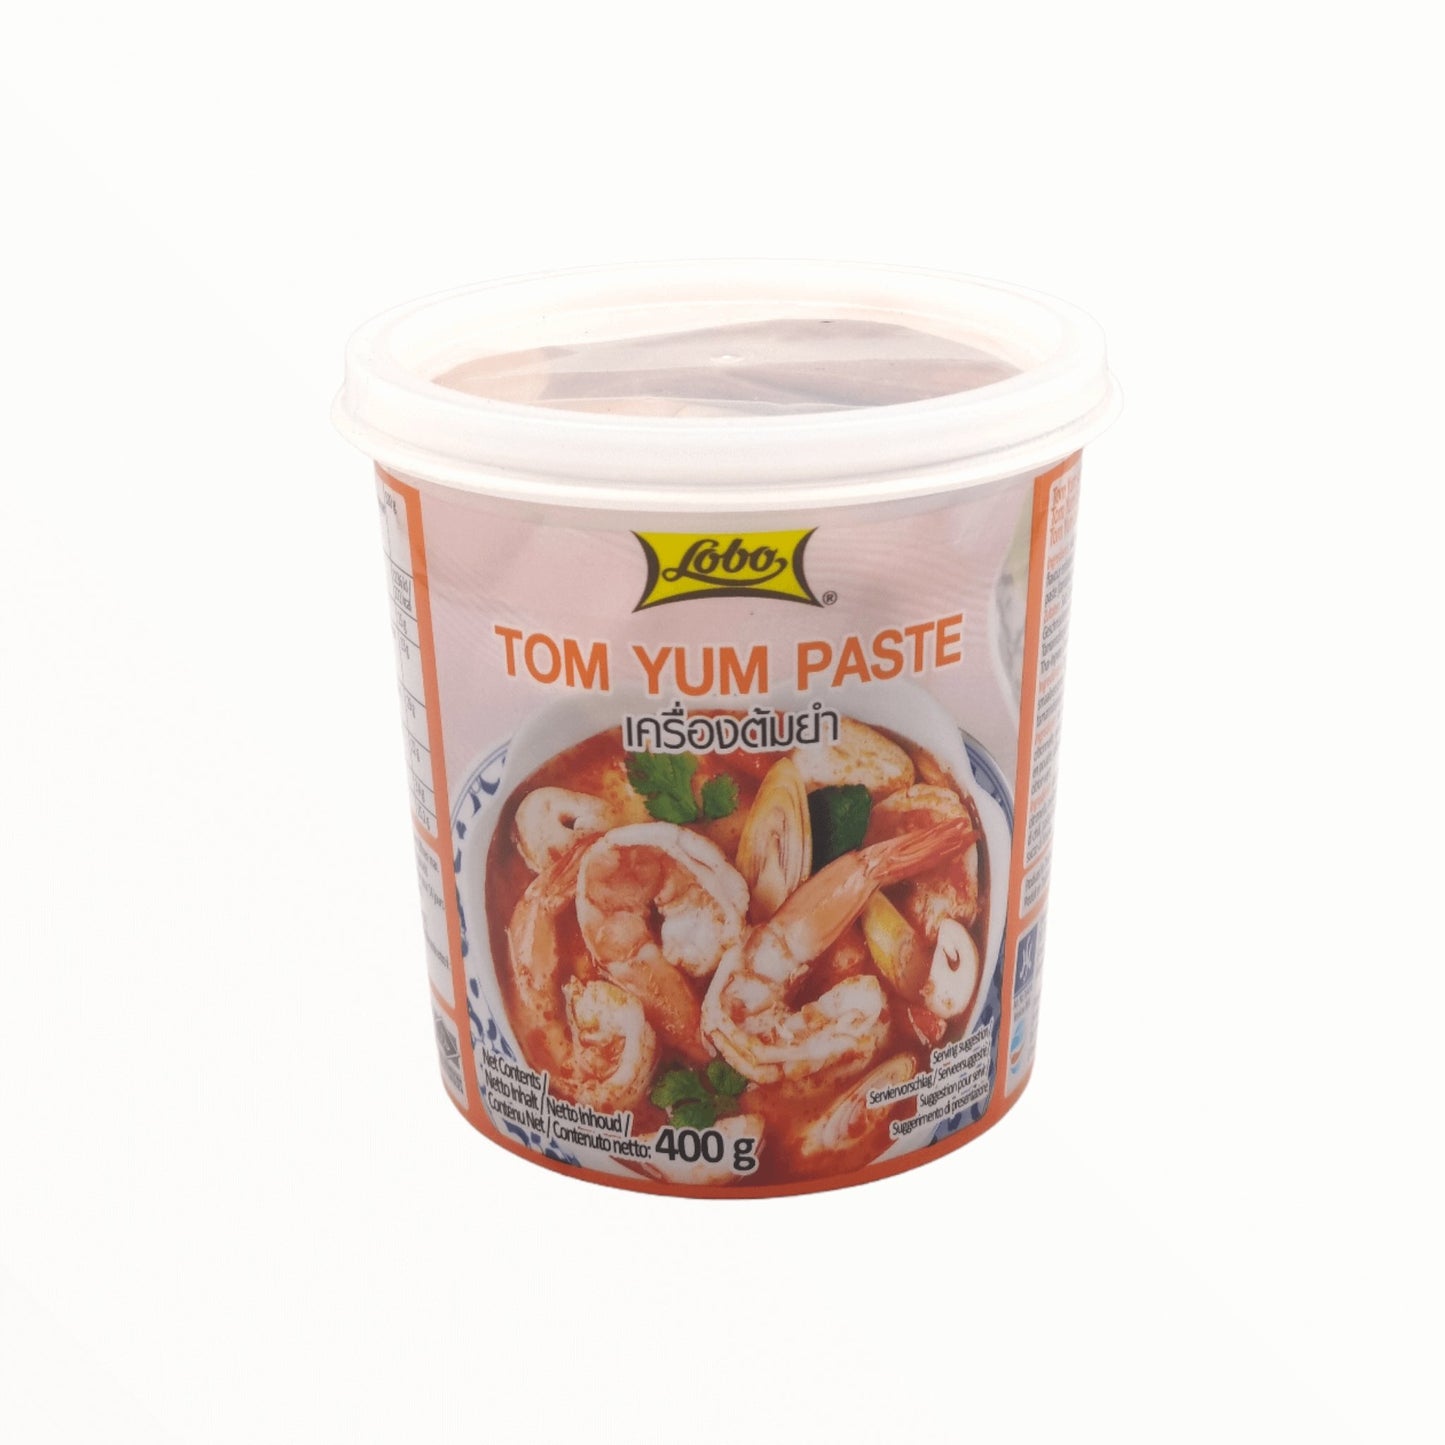 Tom Yum Paste 400g - Mabuhay Pinoy Asia Shop